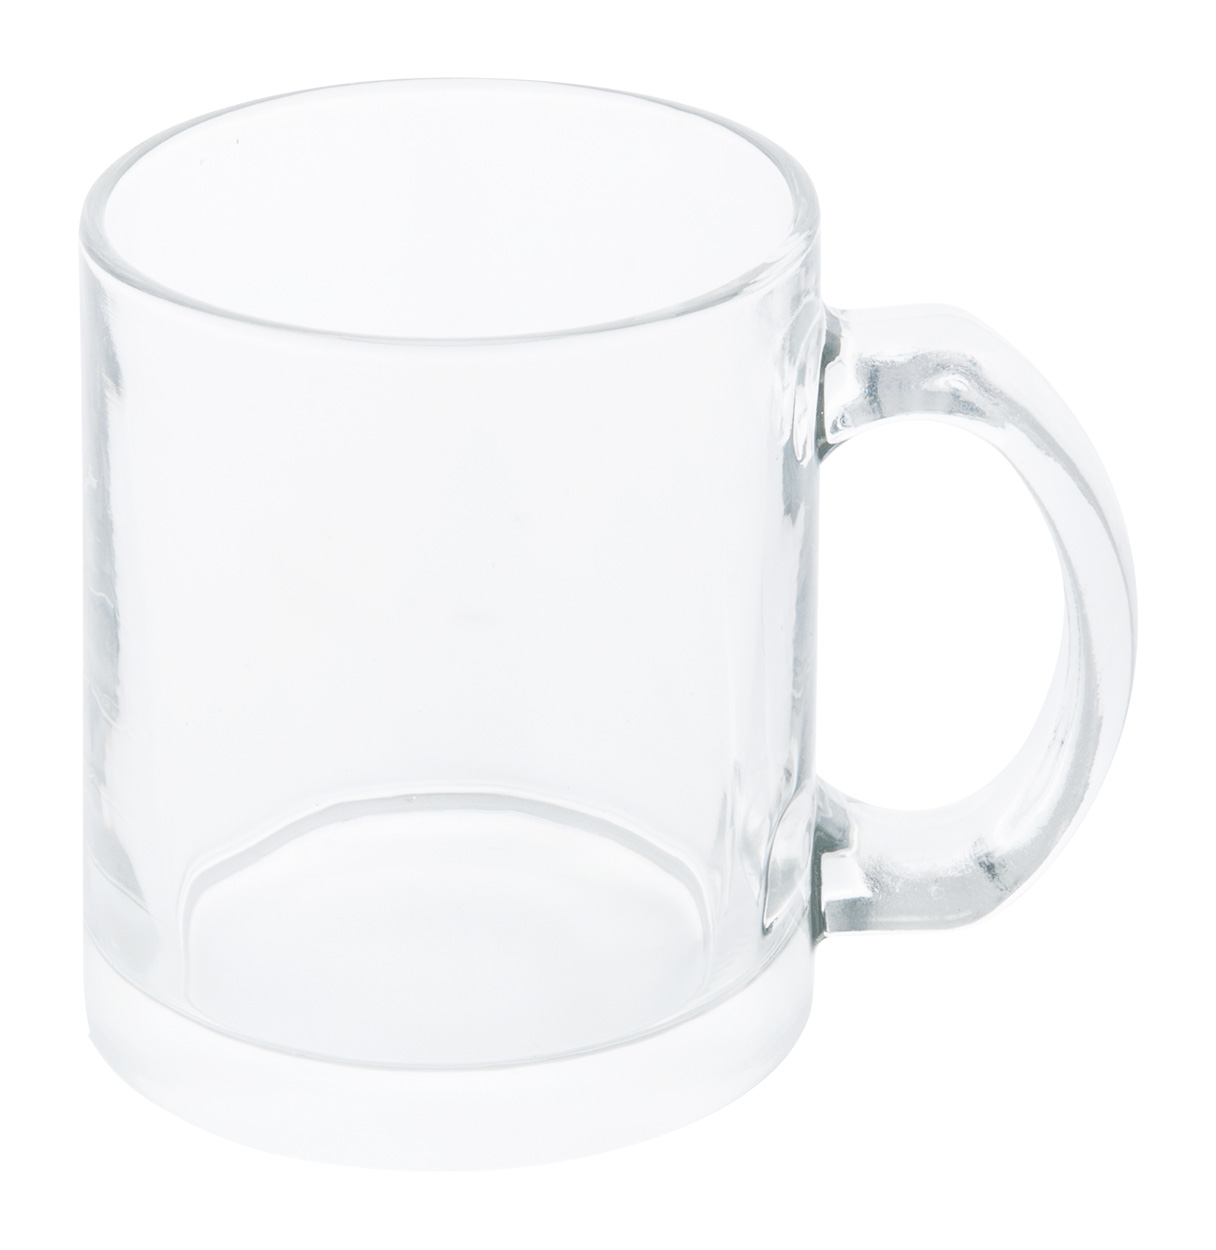 Mug en verre transparent personnalisable en sublimation d'une